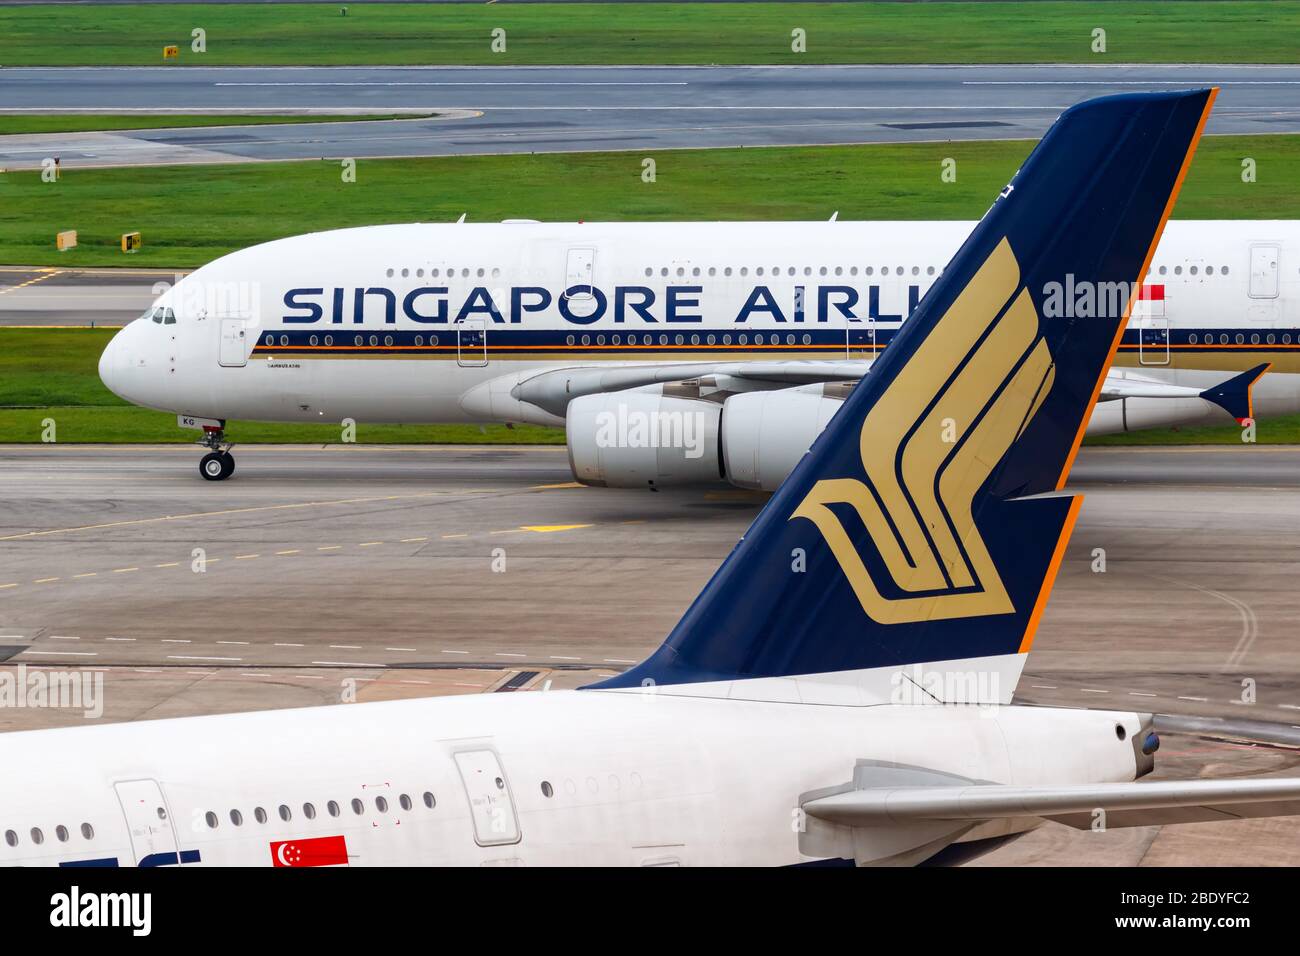 Changi, Singapour – 29 janvier 2018 : avions Airbus de Singapore Airlines à l'aéroport de Changi (NAS) à Singapour. Airbus est un avionneur européen Banque D'Images